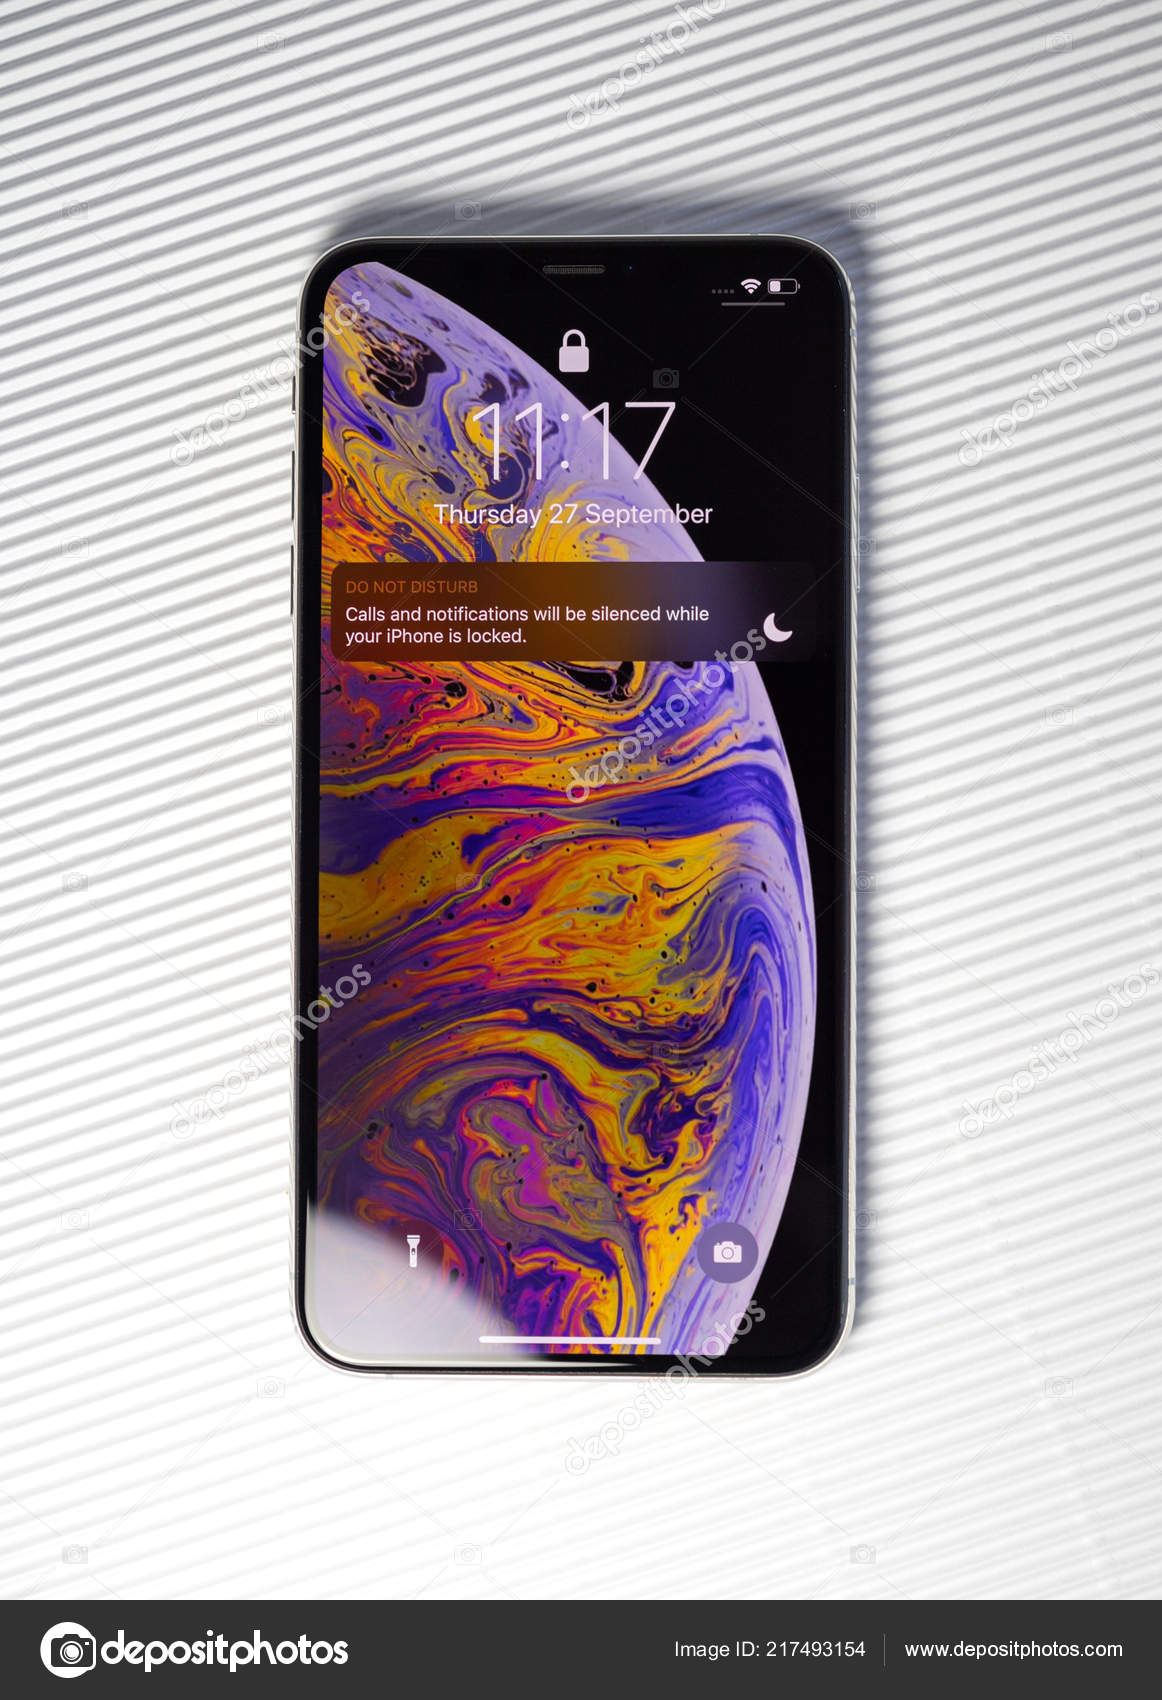 Màn hình khóa nền iPhone XS là một tác phẩm nghệ thuật đầy sáng tạo và đầy phong cách. Gần như bất kỳ hình ảnh nào trên đó đều có thể biến chiếc điện thoại của bạn thành một tác phẩm nghệ thuật độc đáo. Hãy xem hình với chủ đề này để phát hiện ra tác phẩm nghệ thuật độc đáo của riêng bạn.